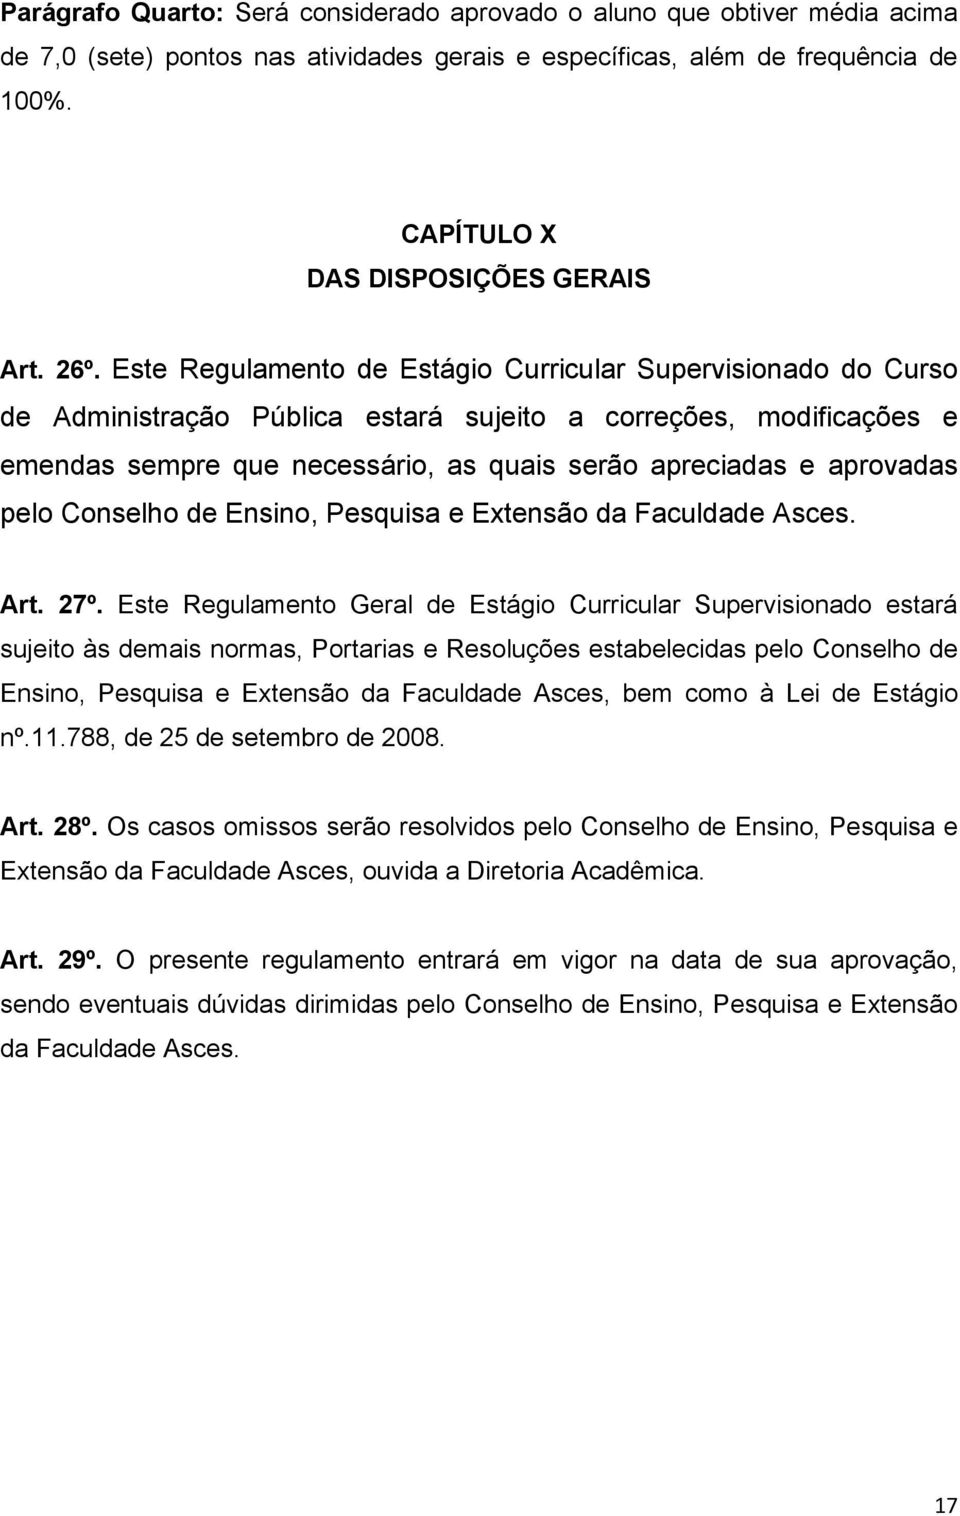 aprovadas pelo Conselho de Ensino, Pesquisa e Extensão da Faculdade Asces. Art. 27º.